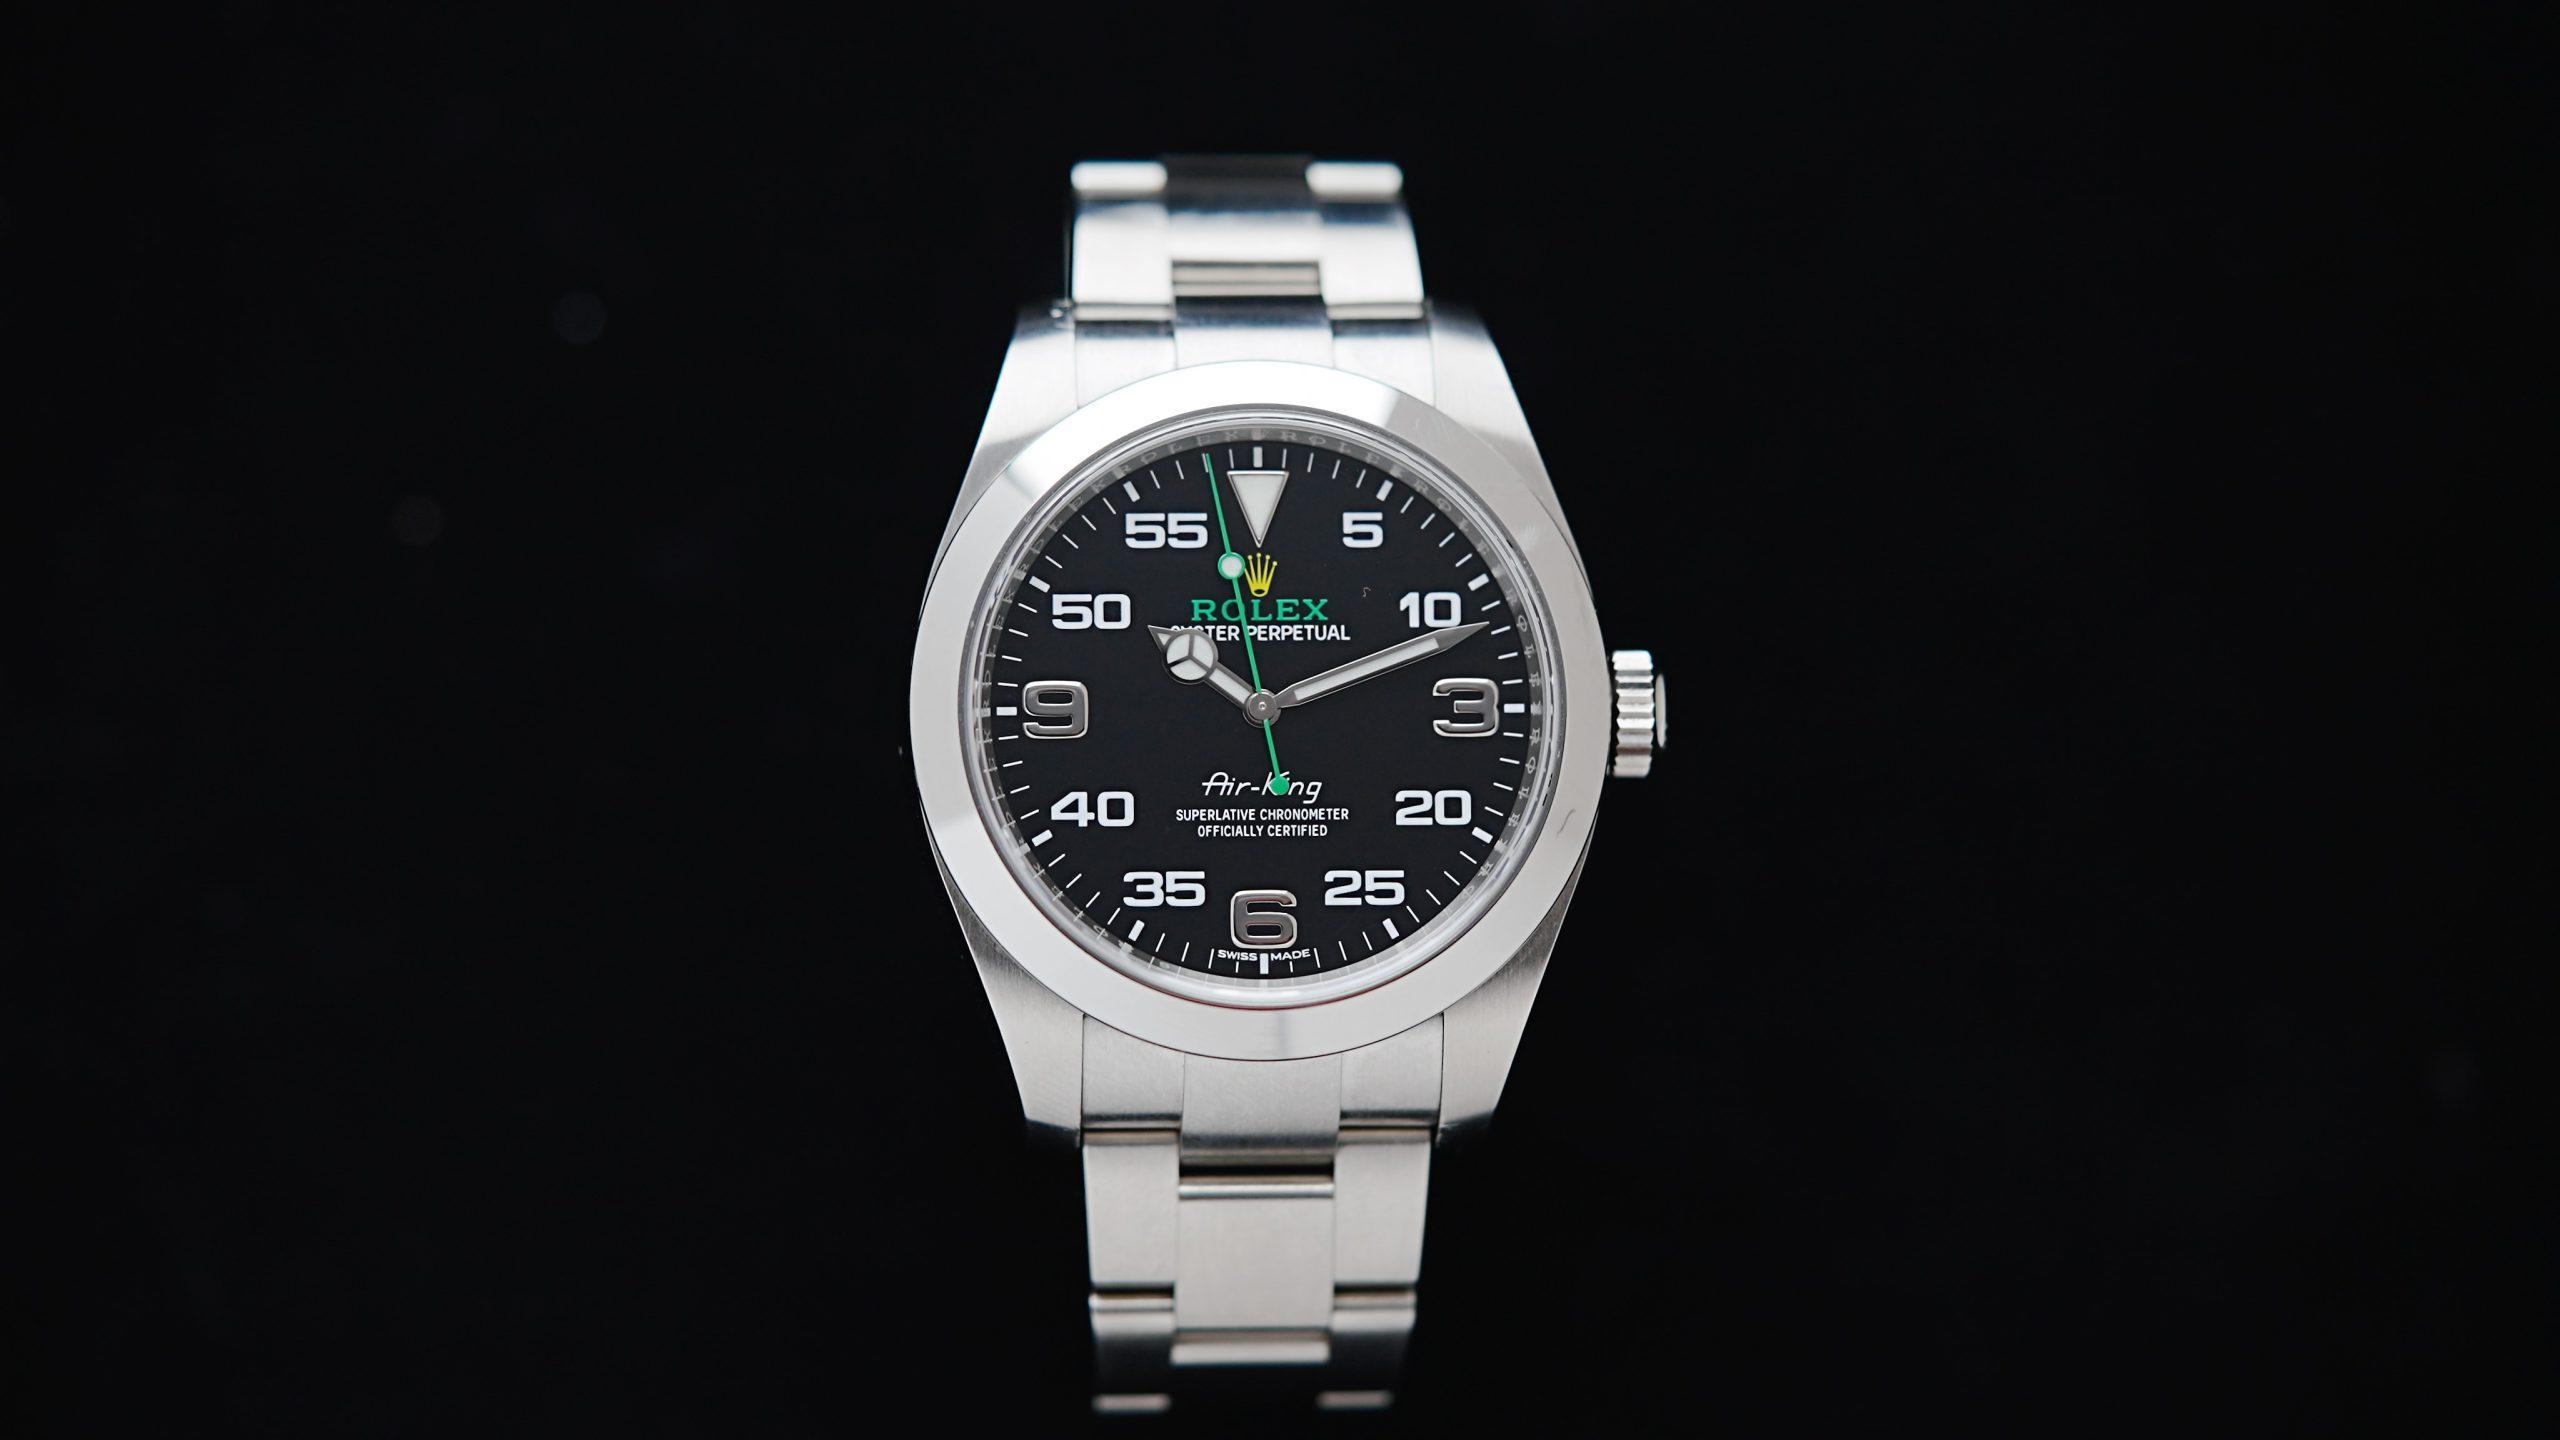 Rolex Air King Gen 1 watch featured under white lighting.